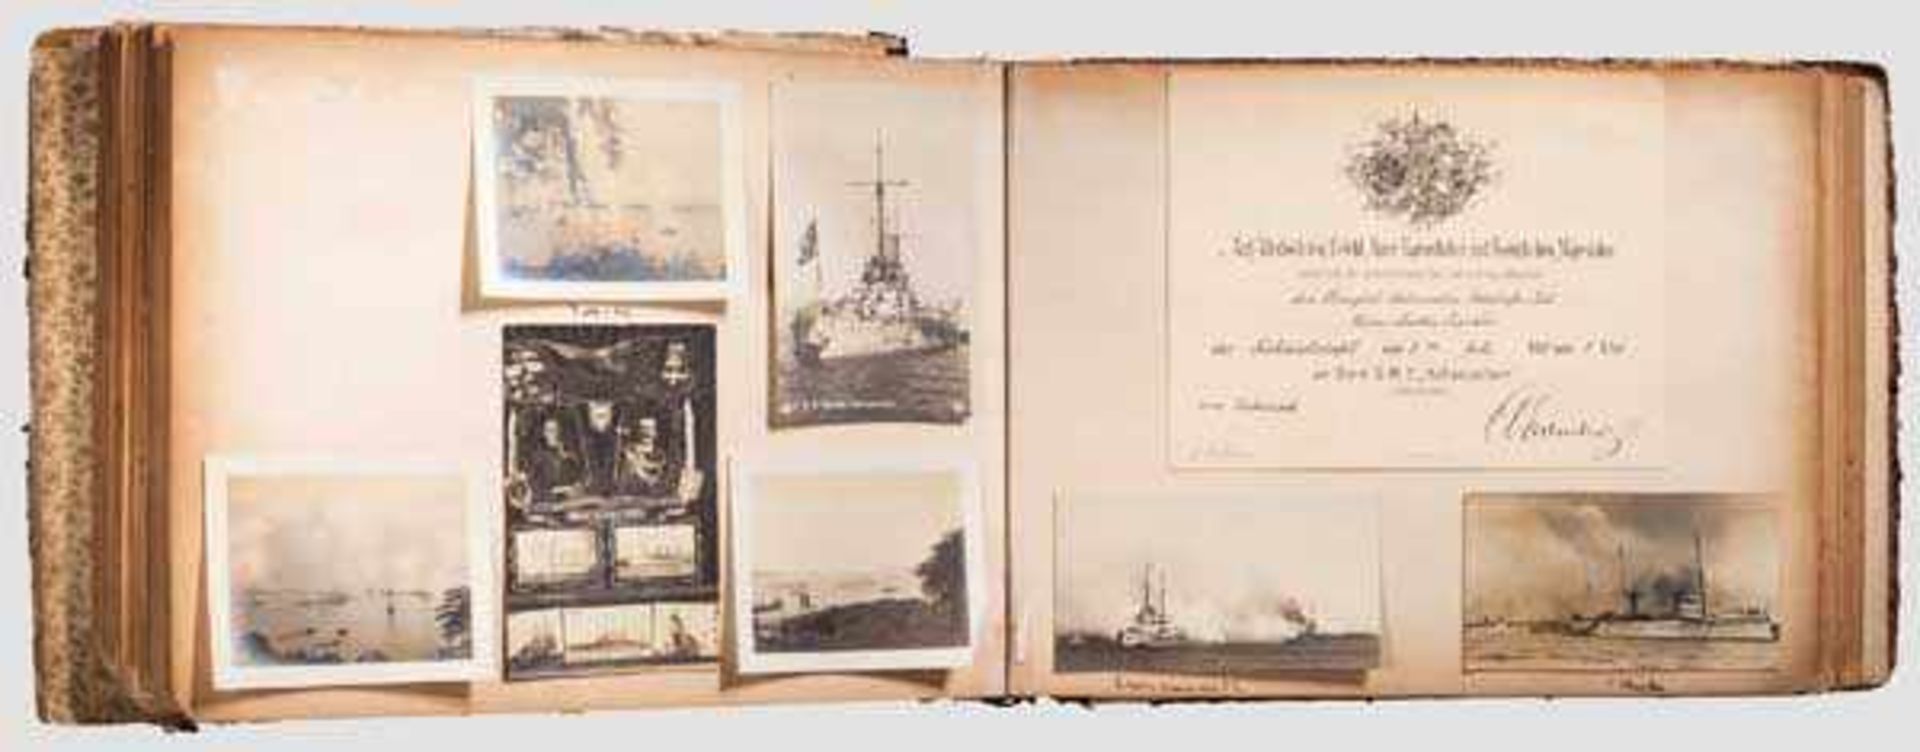 Königlich Italienischer Botschaftsrat Alberto Martin Franklin - Fotoalbum, 1911 - 1915 Insgesamt ca. - Bild 2 aus 4